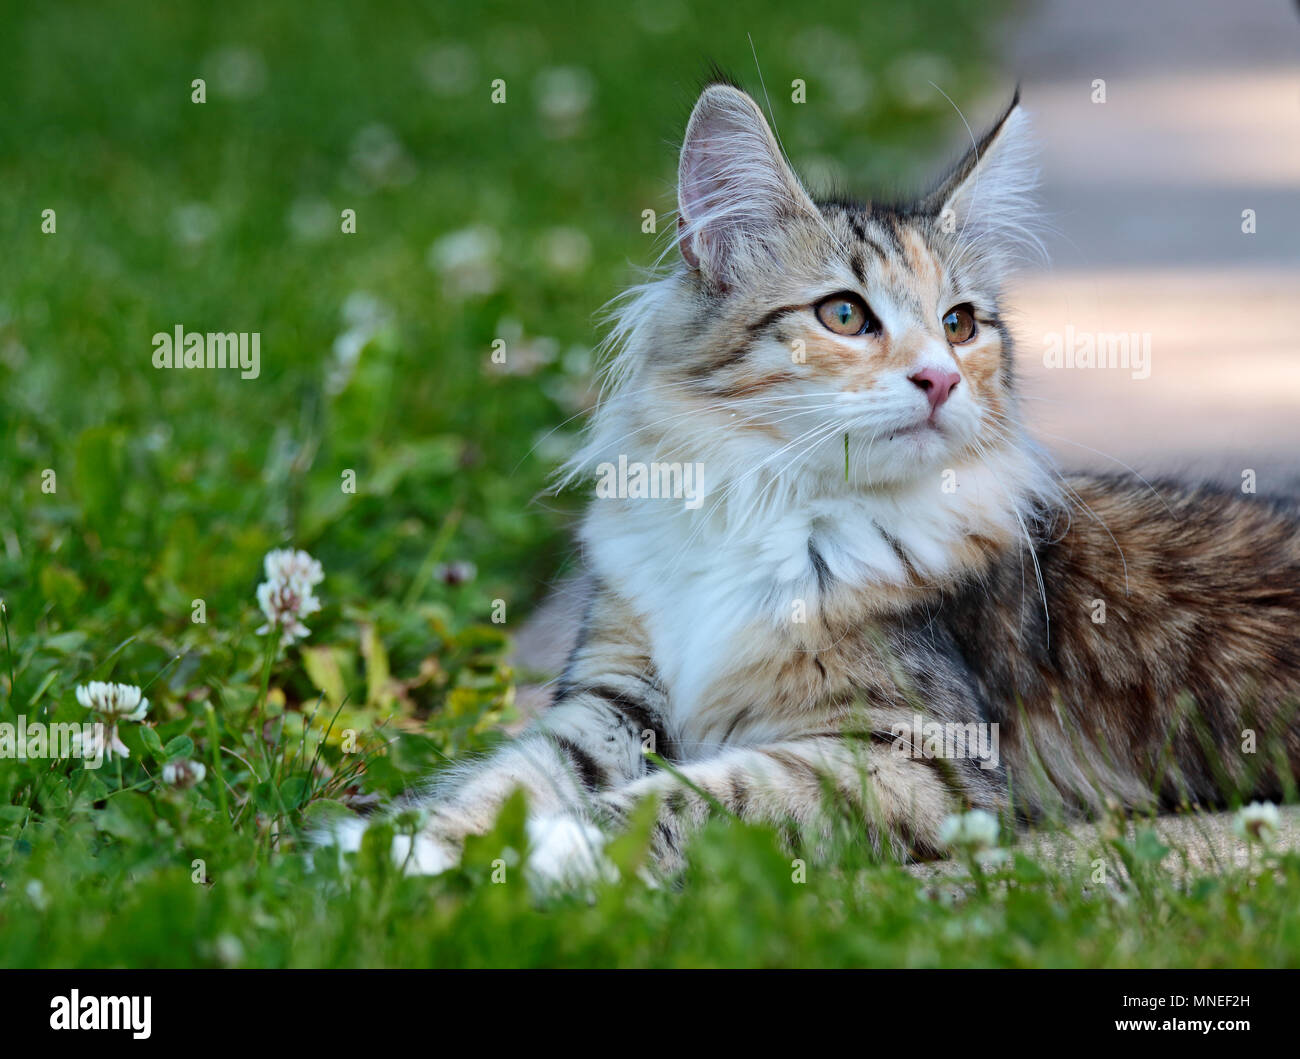 Norwegian forest cat kitten in sunny garden Stock Photo